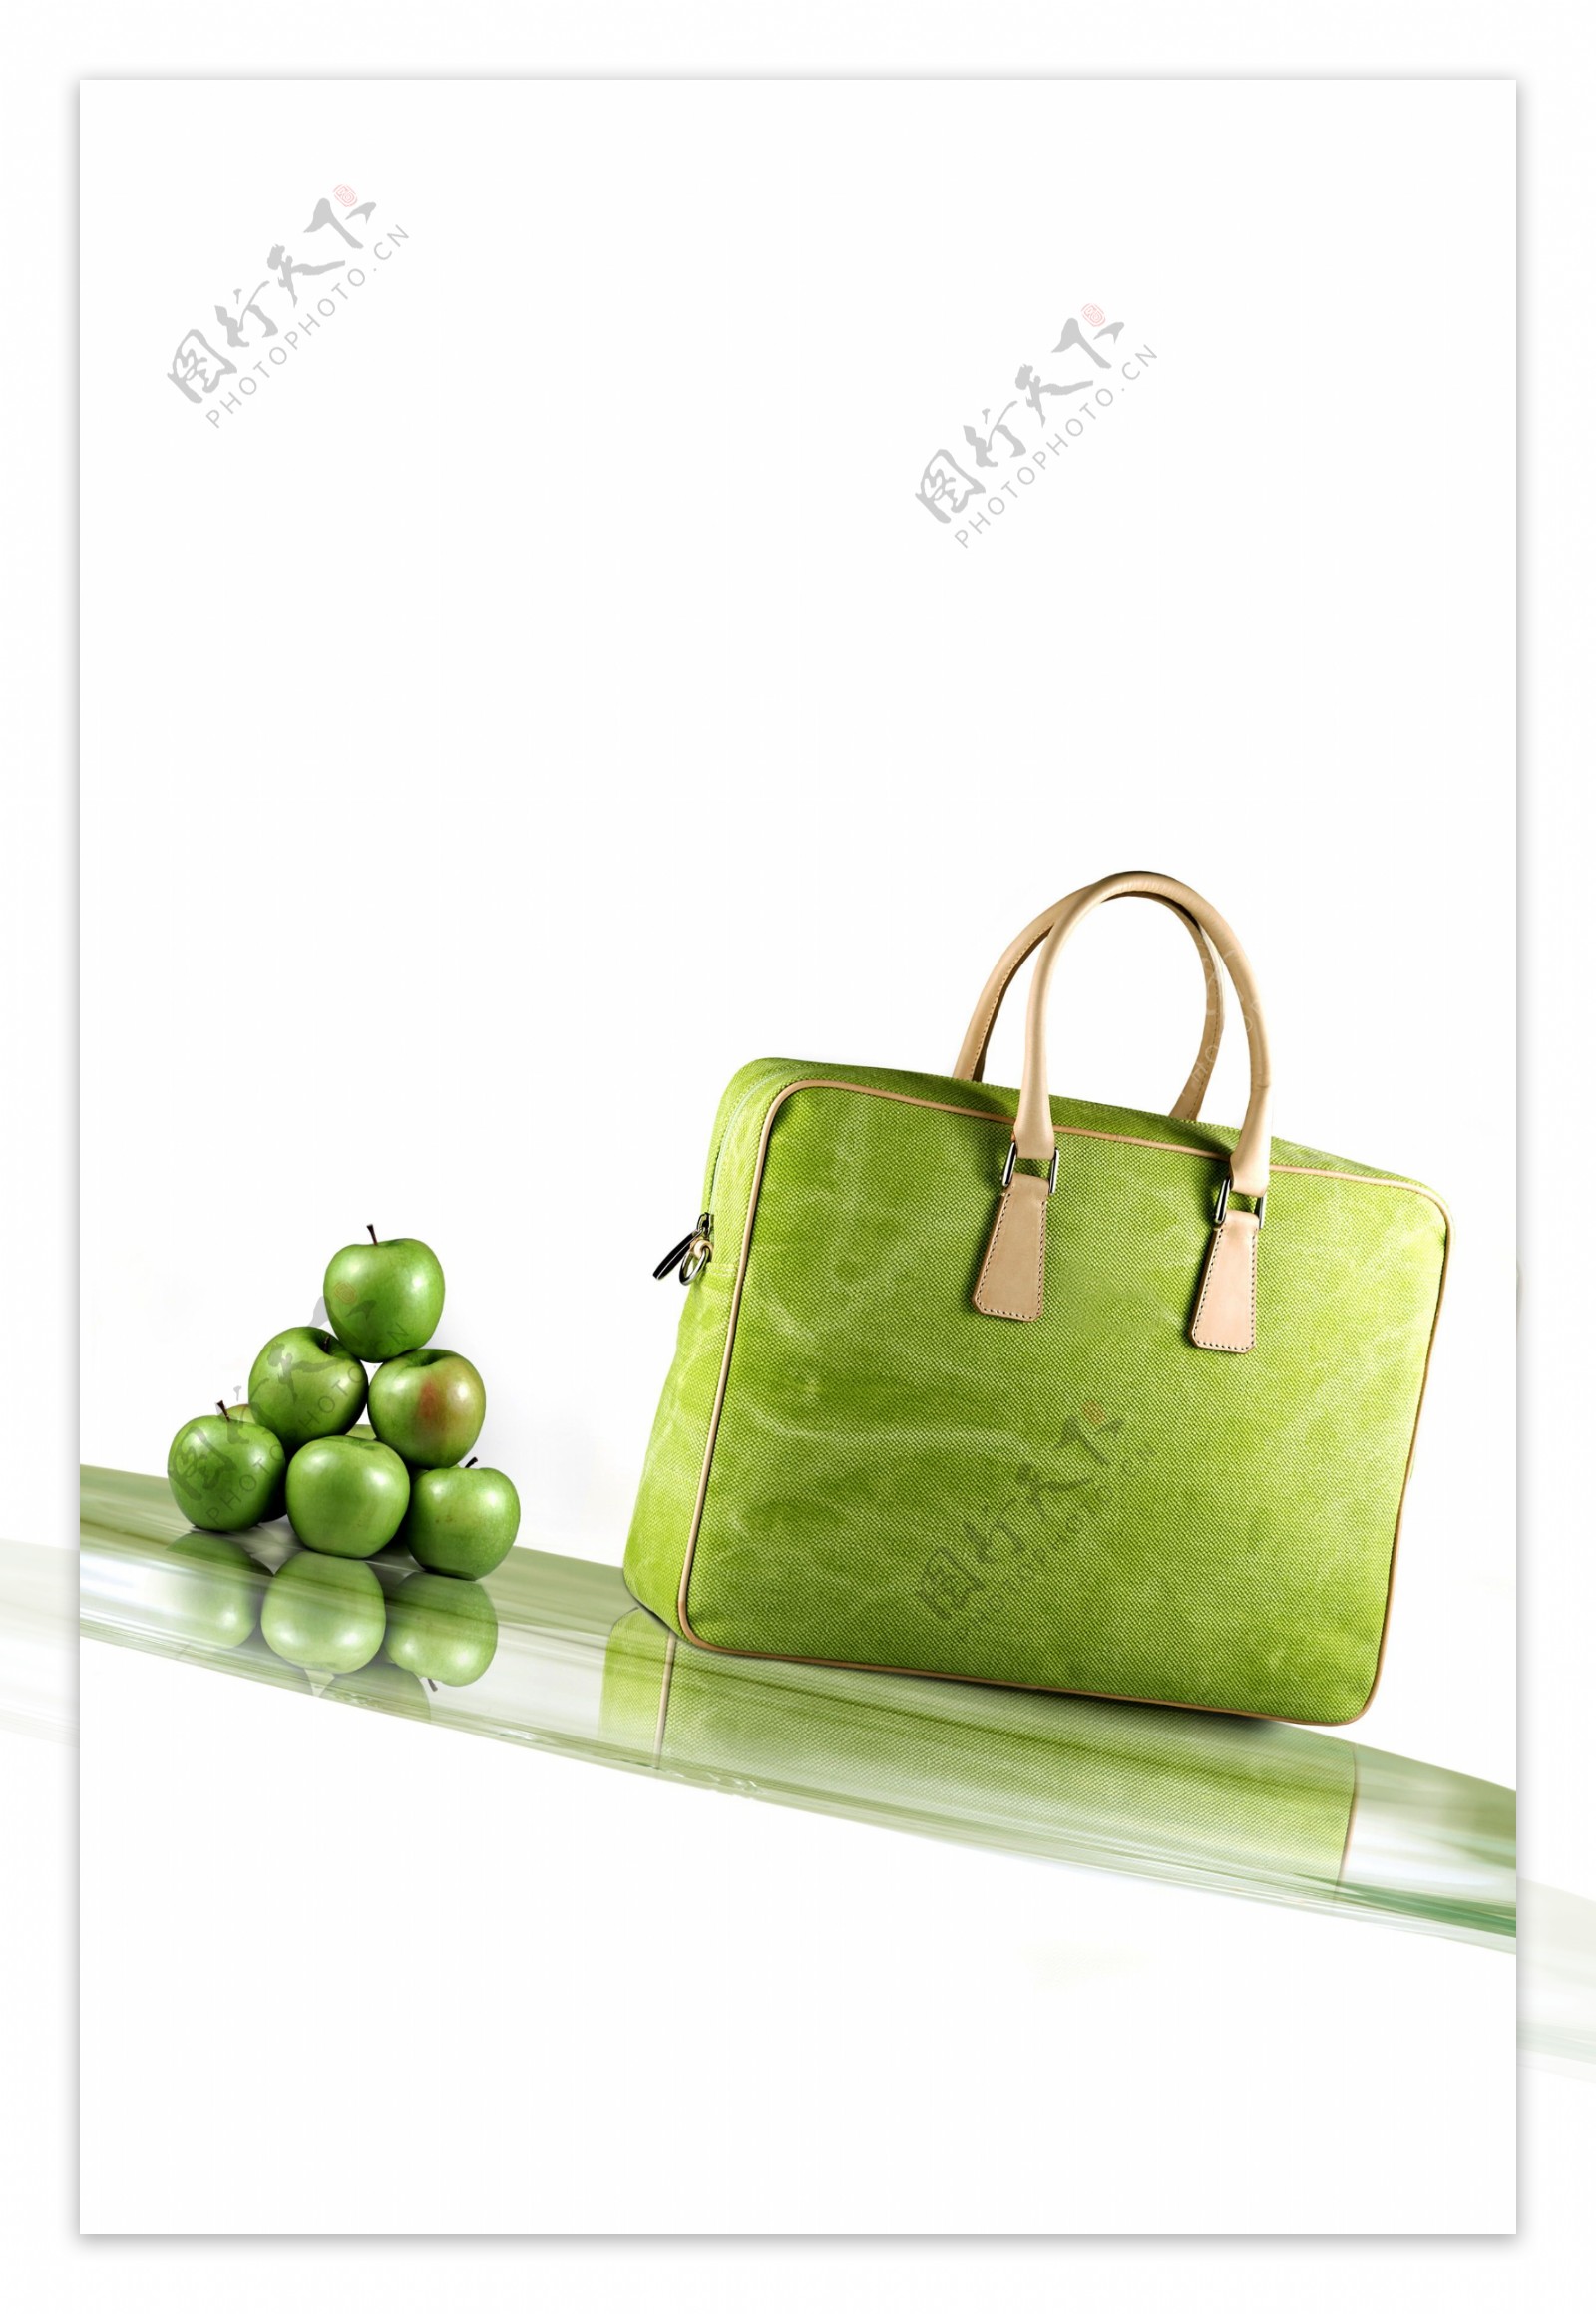 商务绿色手提包图片